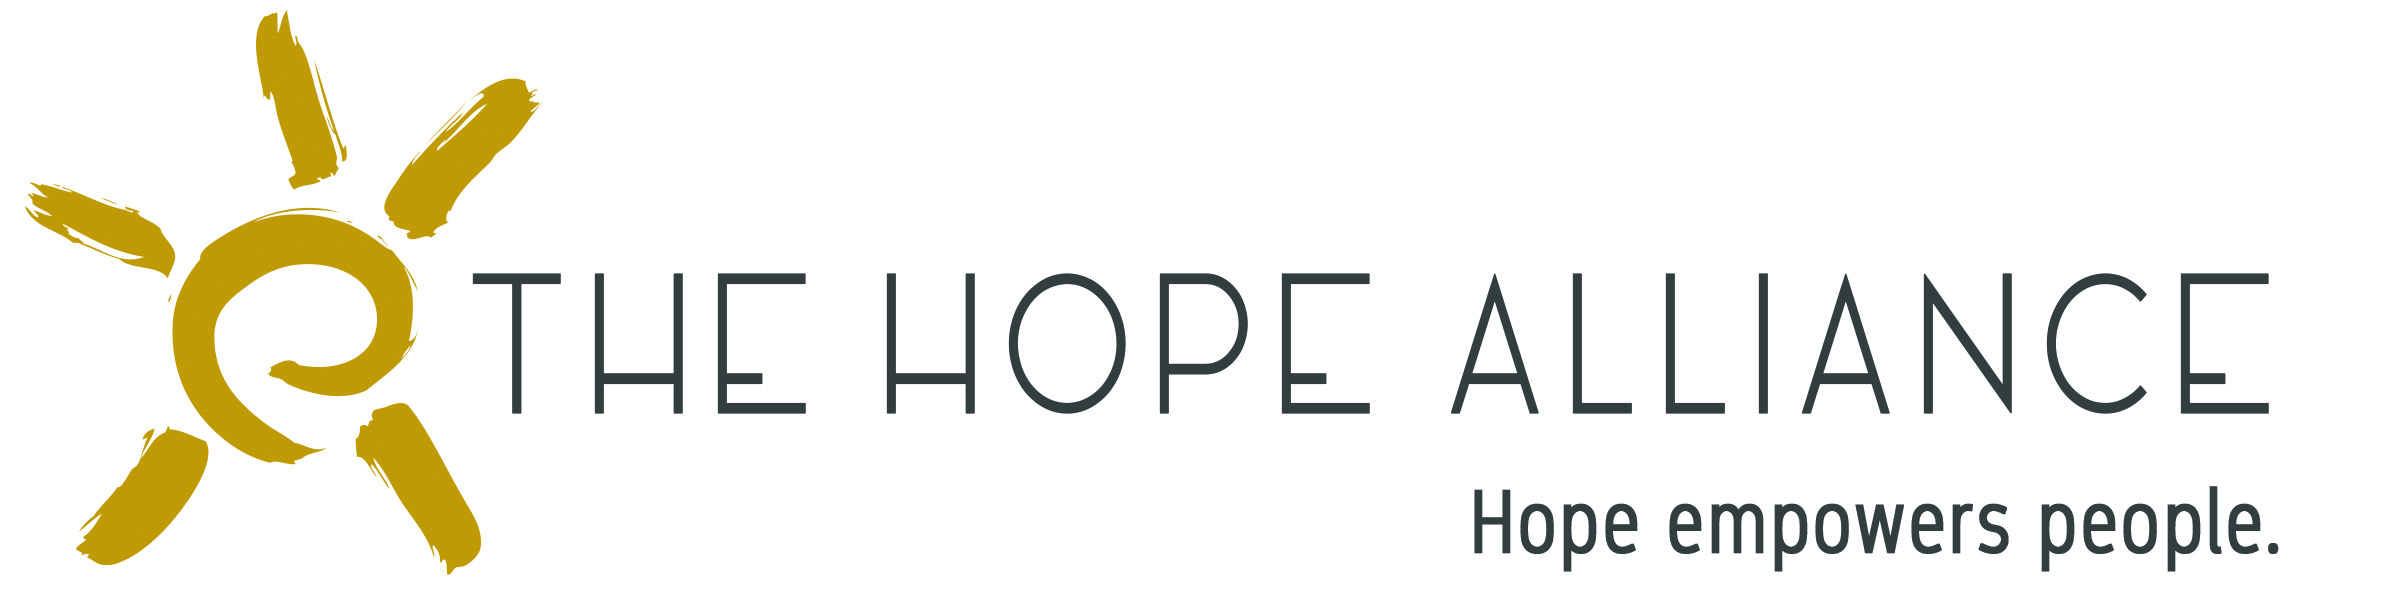 Hope Alliance.jpg